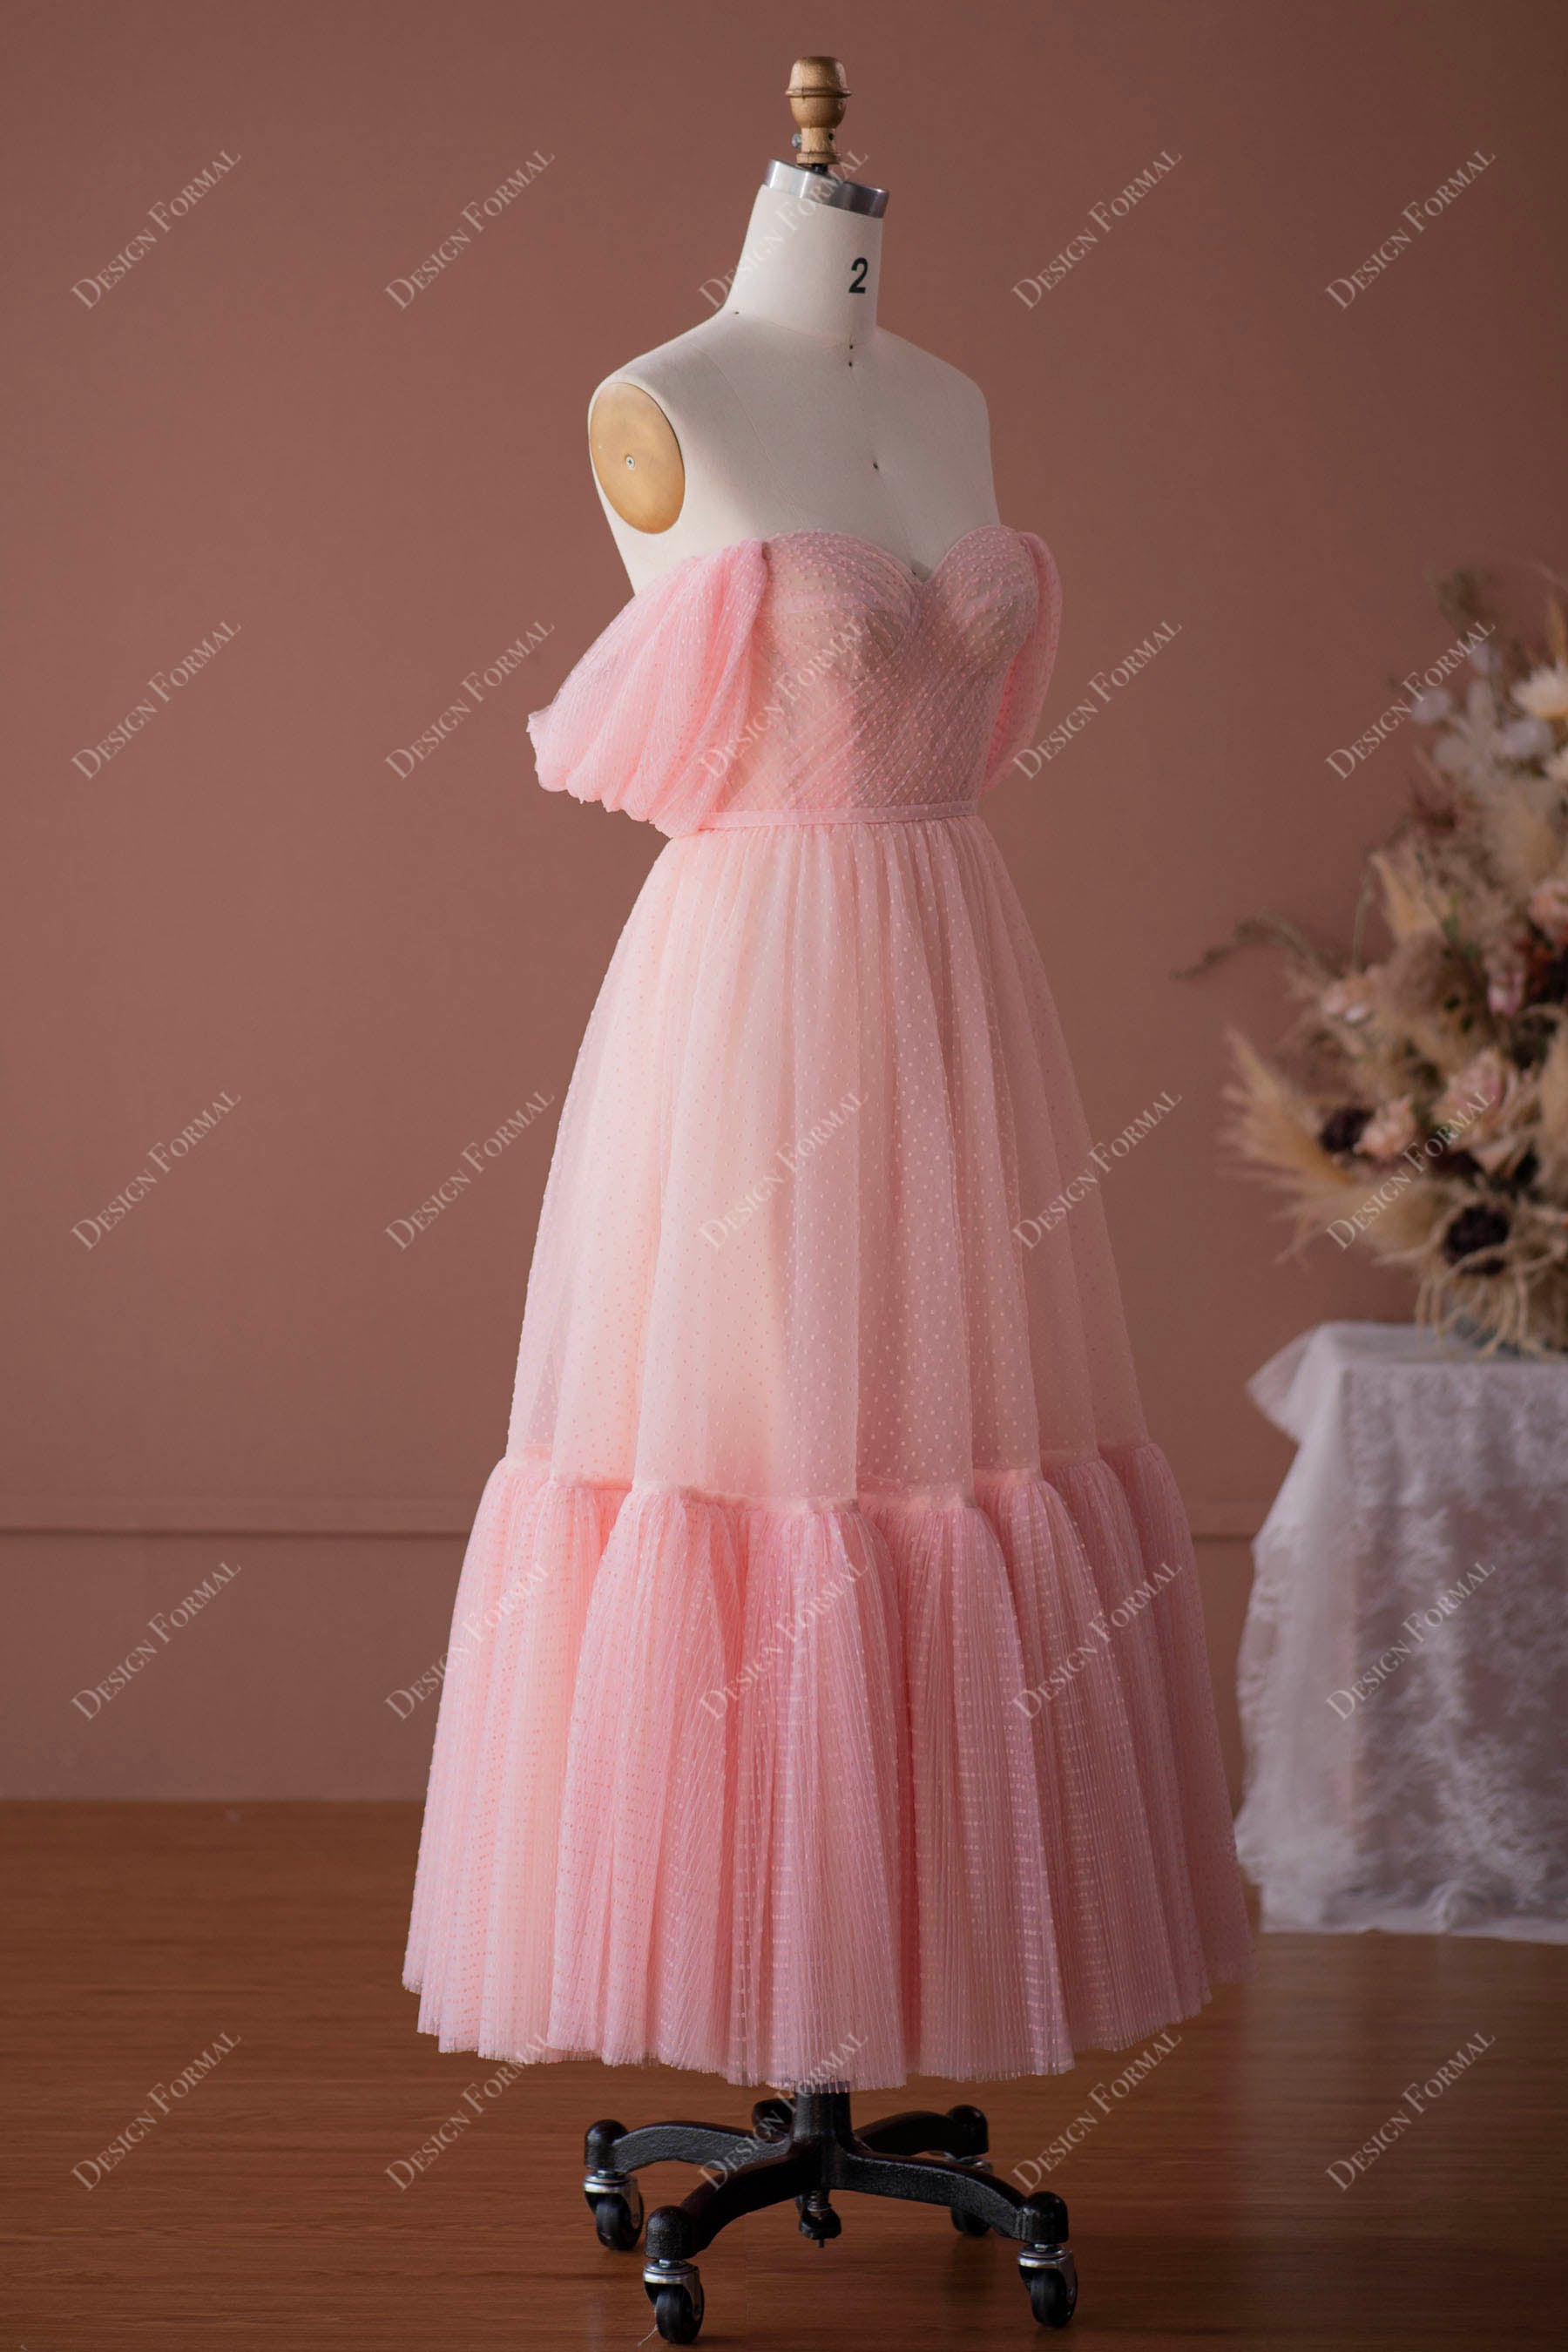 A-line Tulle Tea Length Dress